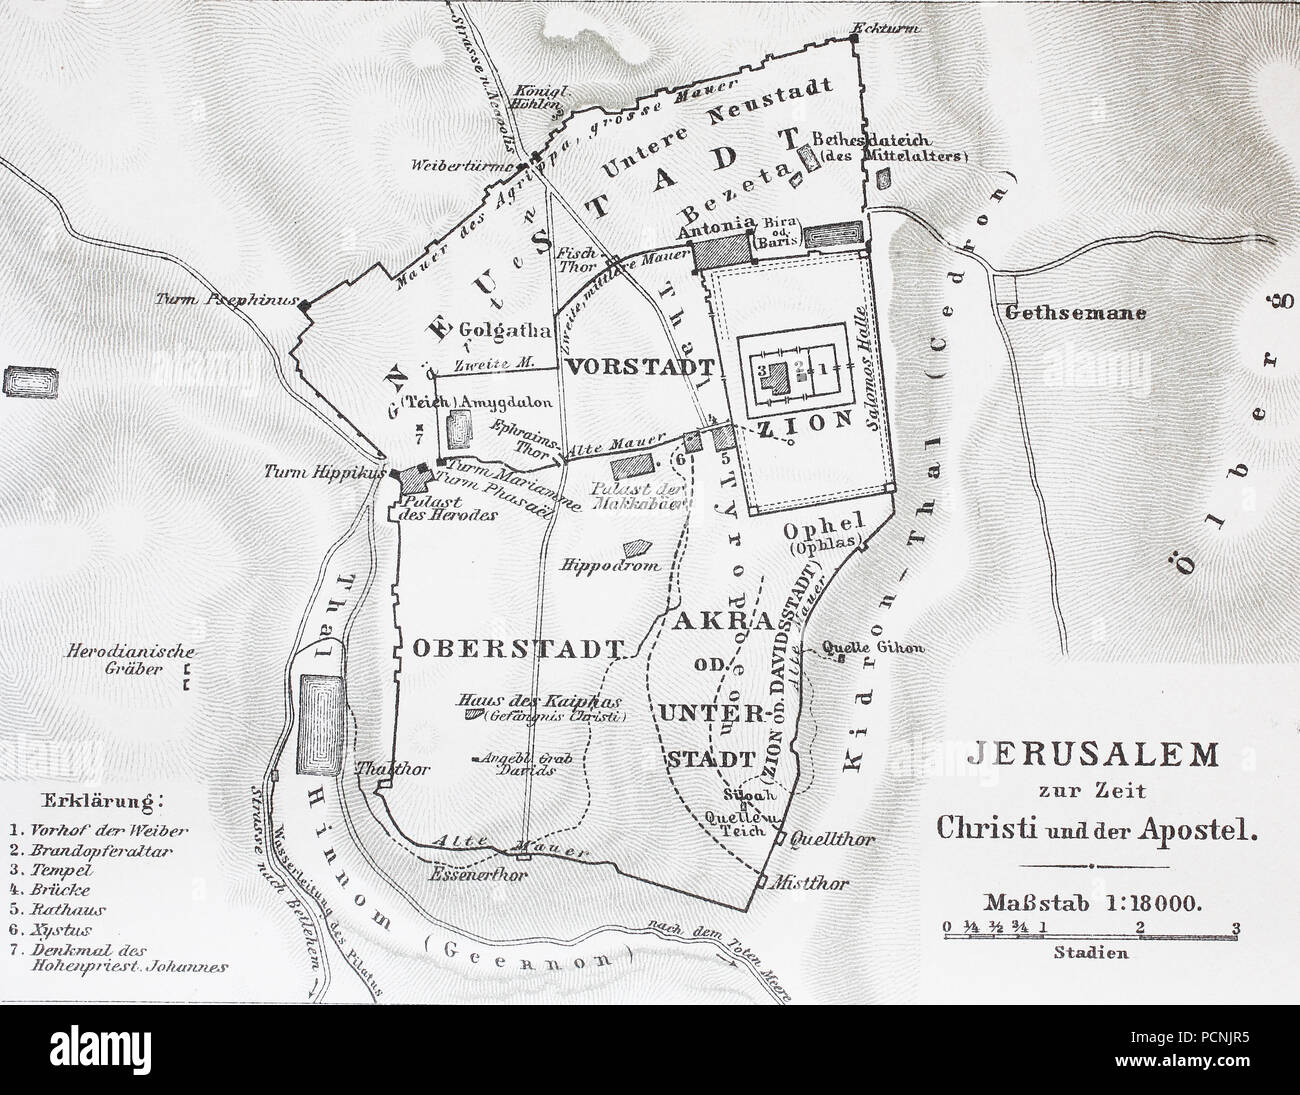 Karte von Jerusalem zur Zeit Jesu Christi, digital verbesserte Reproduktion einer historischen Bild aus dem Jahr 1885 Stockfoto